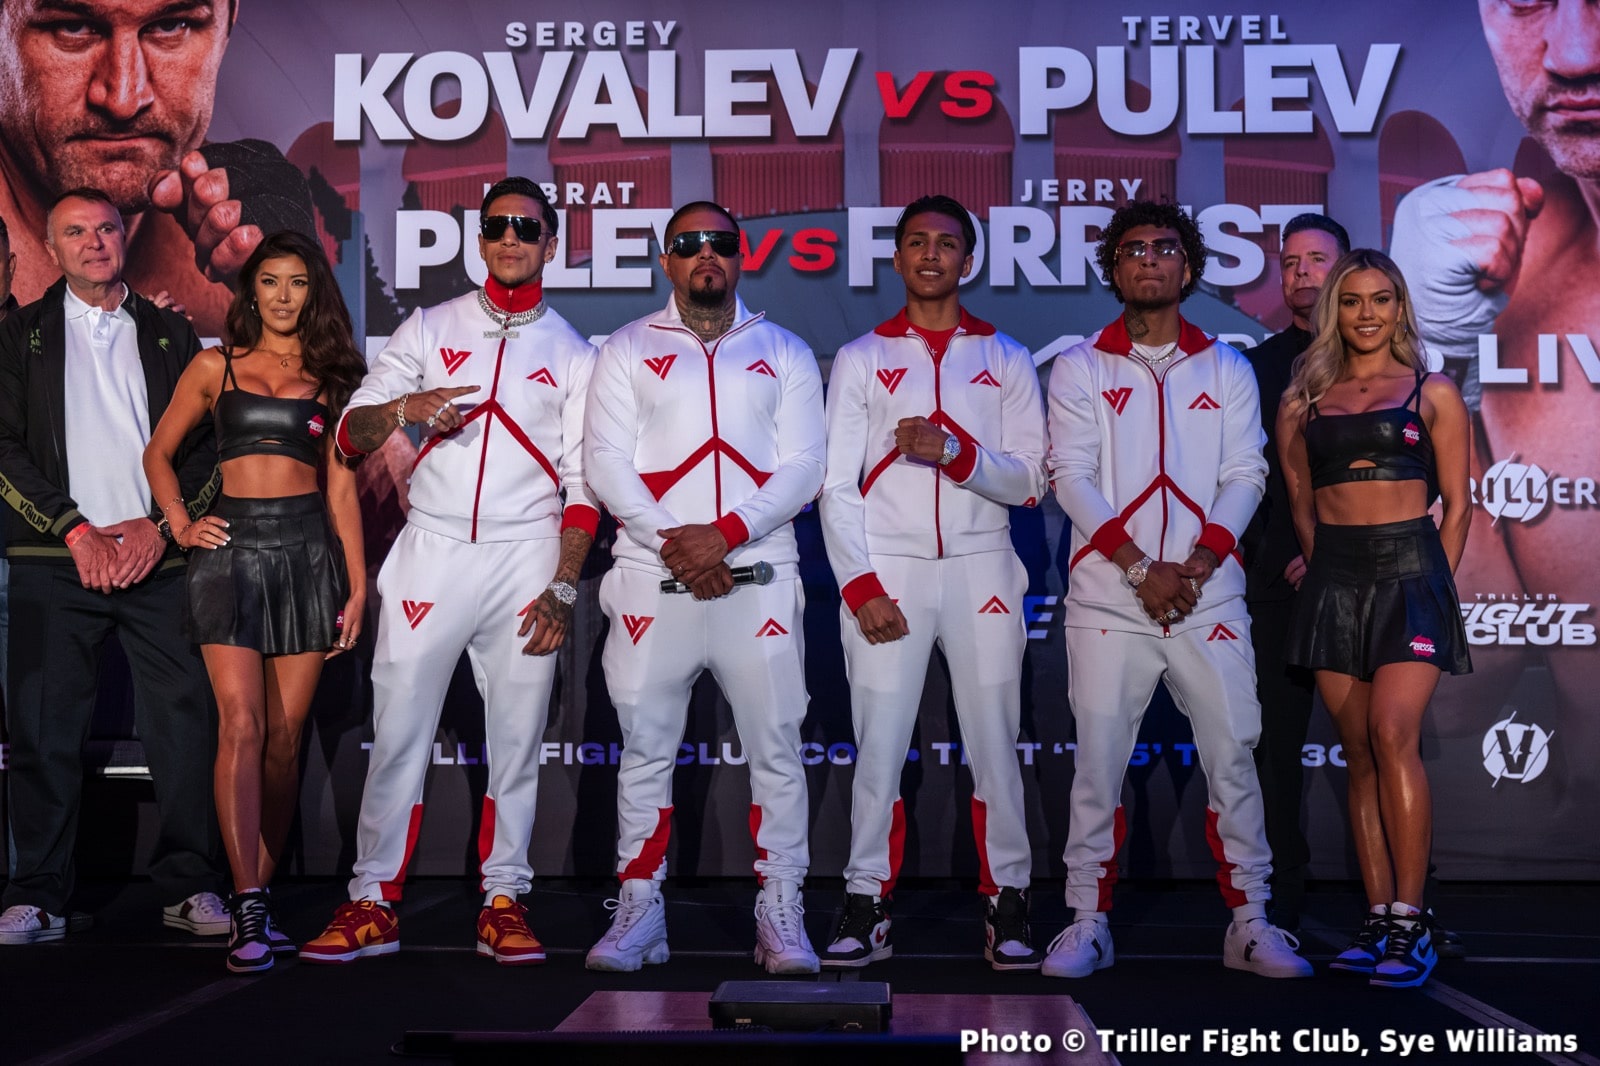 Sergey Kovalev v T. Pulev & Forrest vs Kubrat Pulev Official FITE TV Weights